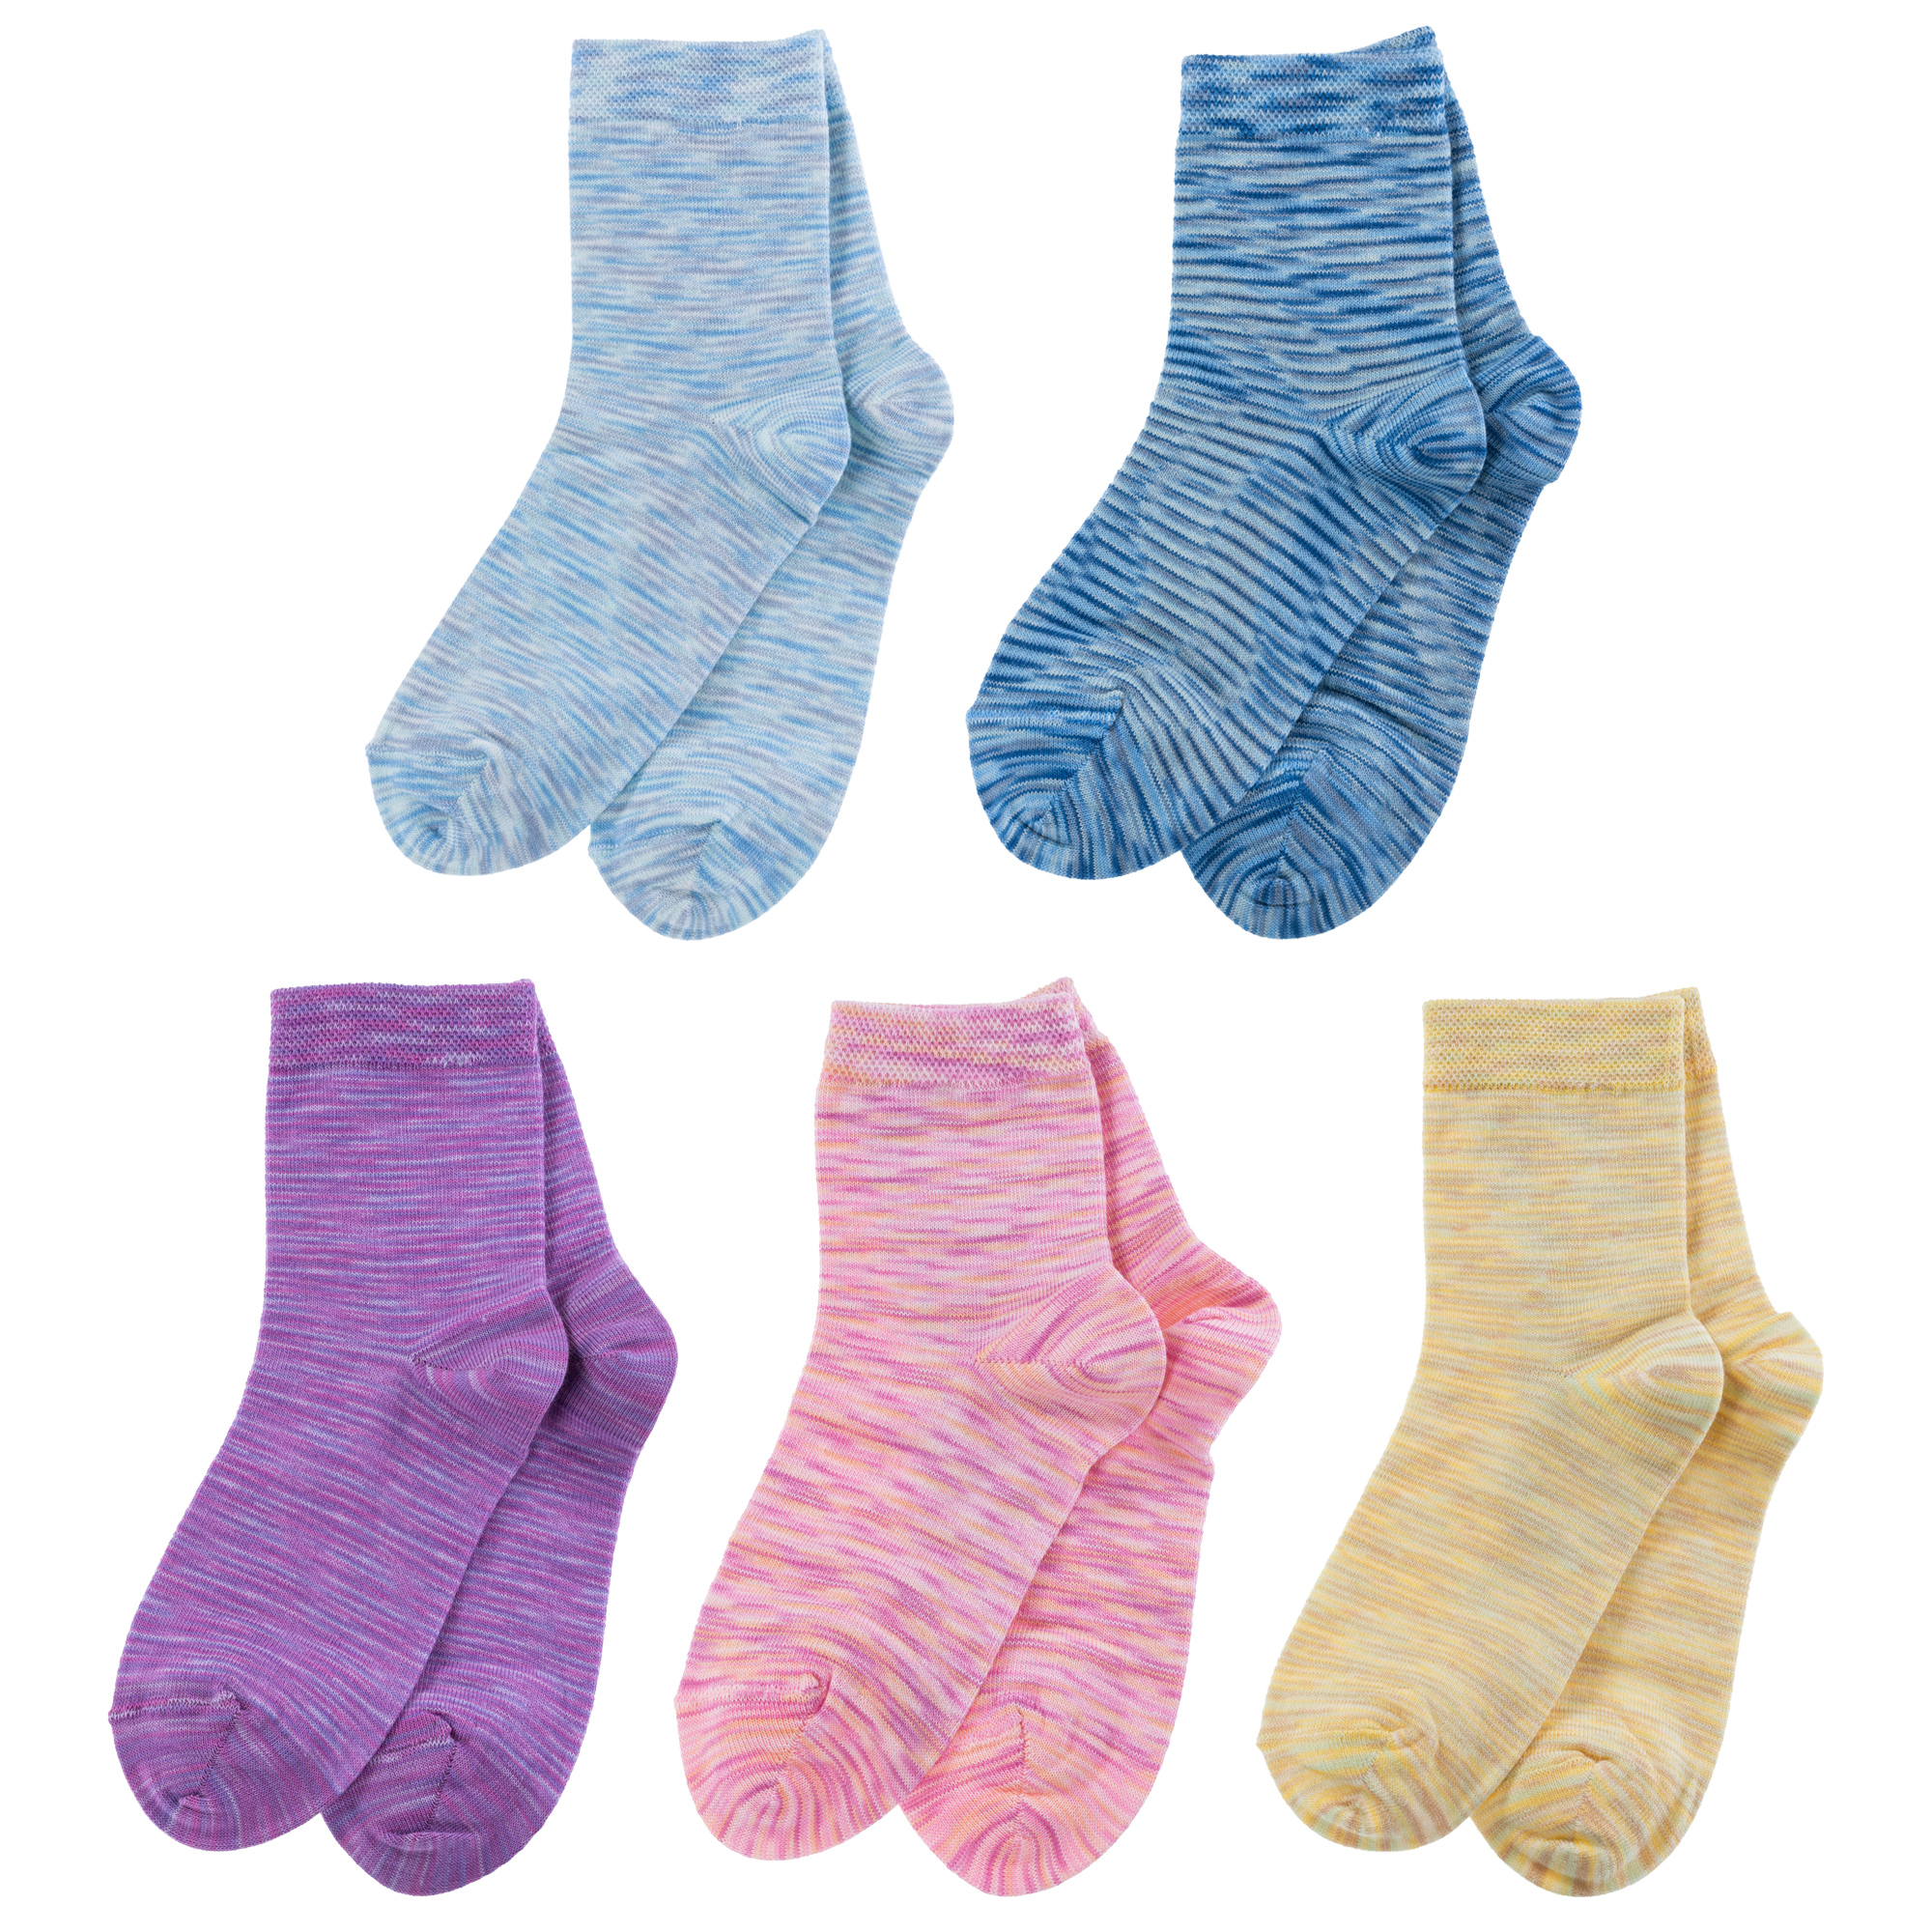 Носки детские LorenzLine 5-Л106 цв. синий; фиолетовый; розовый; голубой; желтый р. 10-12 наушники с микрофоном a4tech bloody g575 желтый фиолетовый